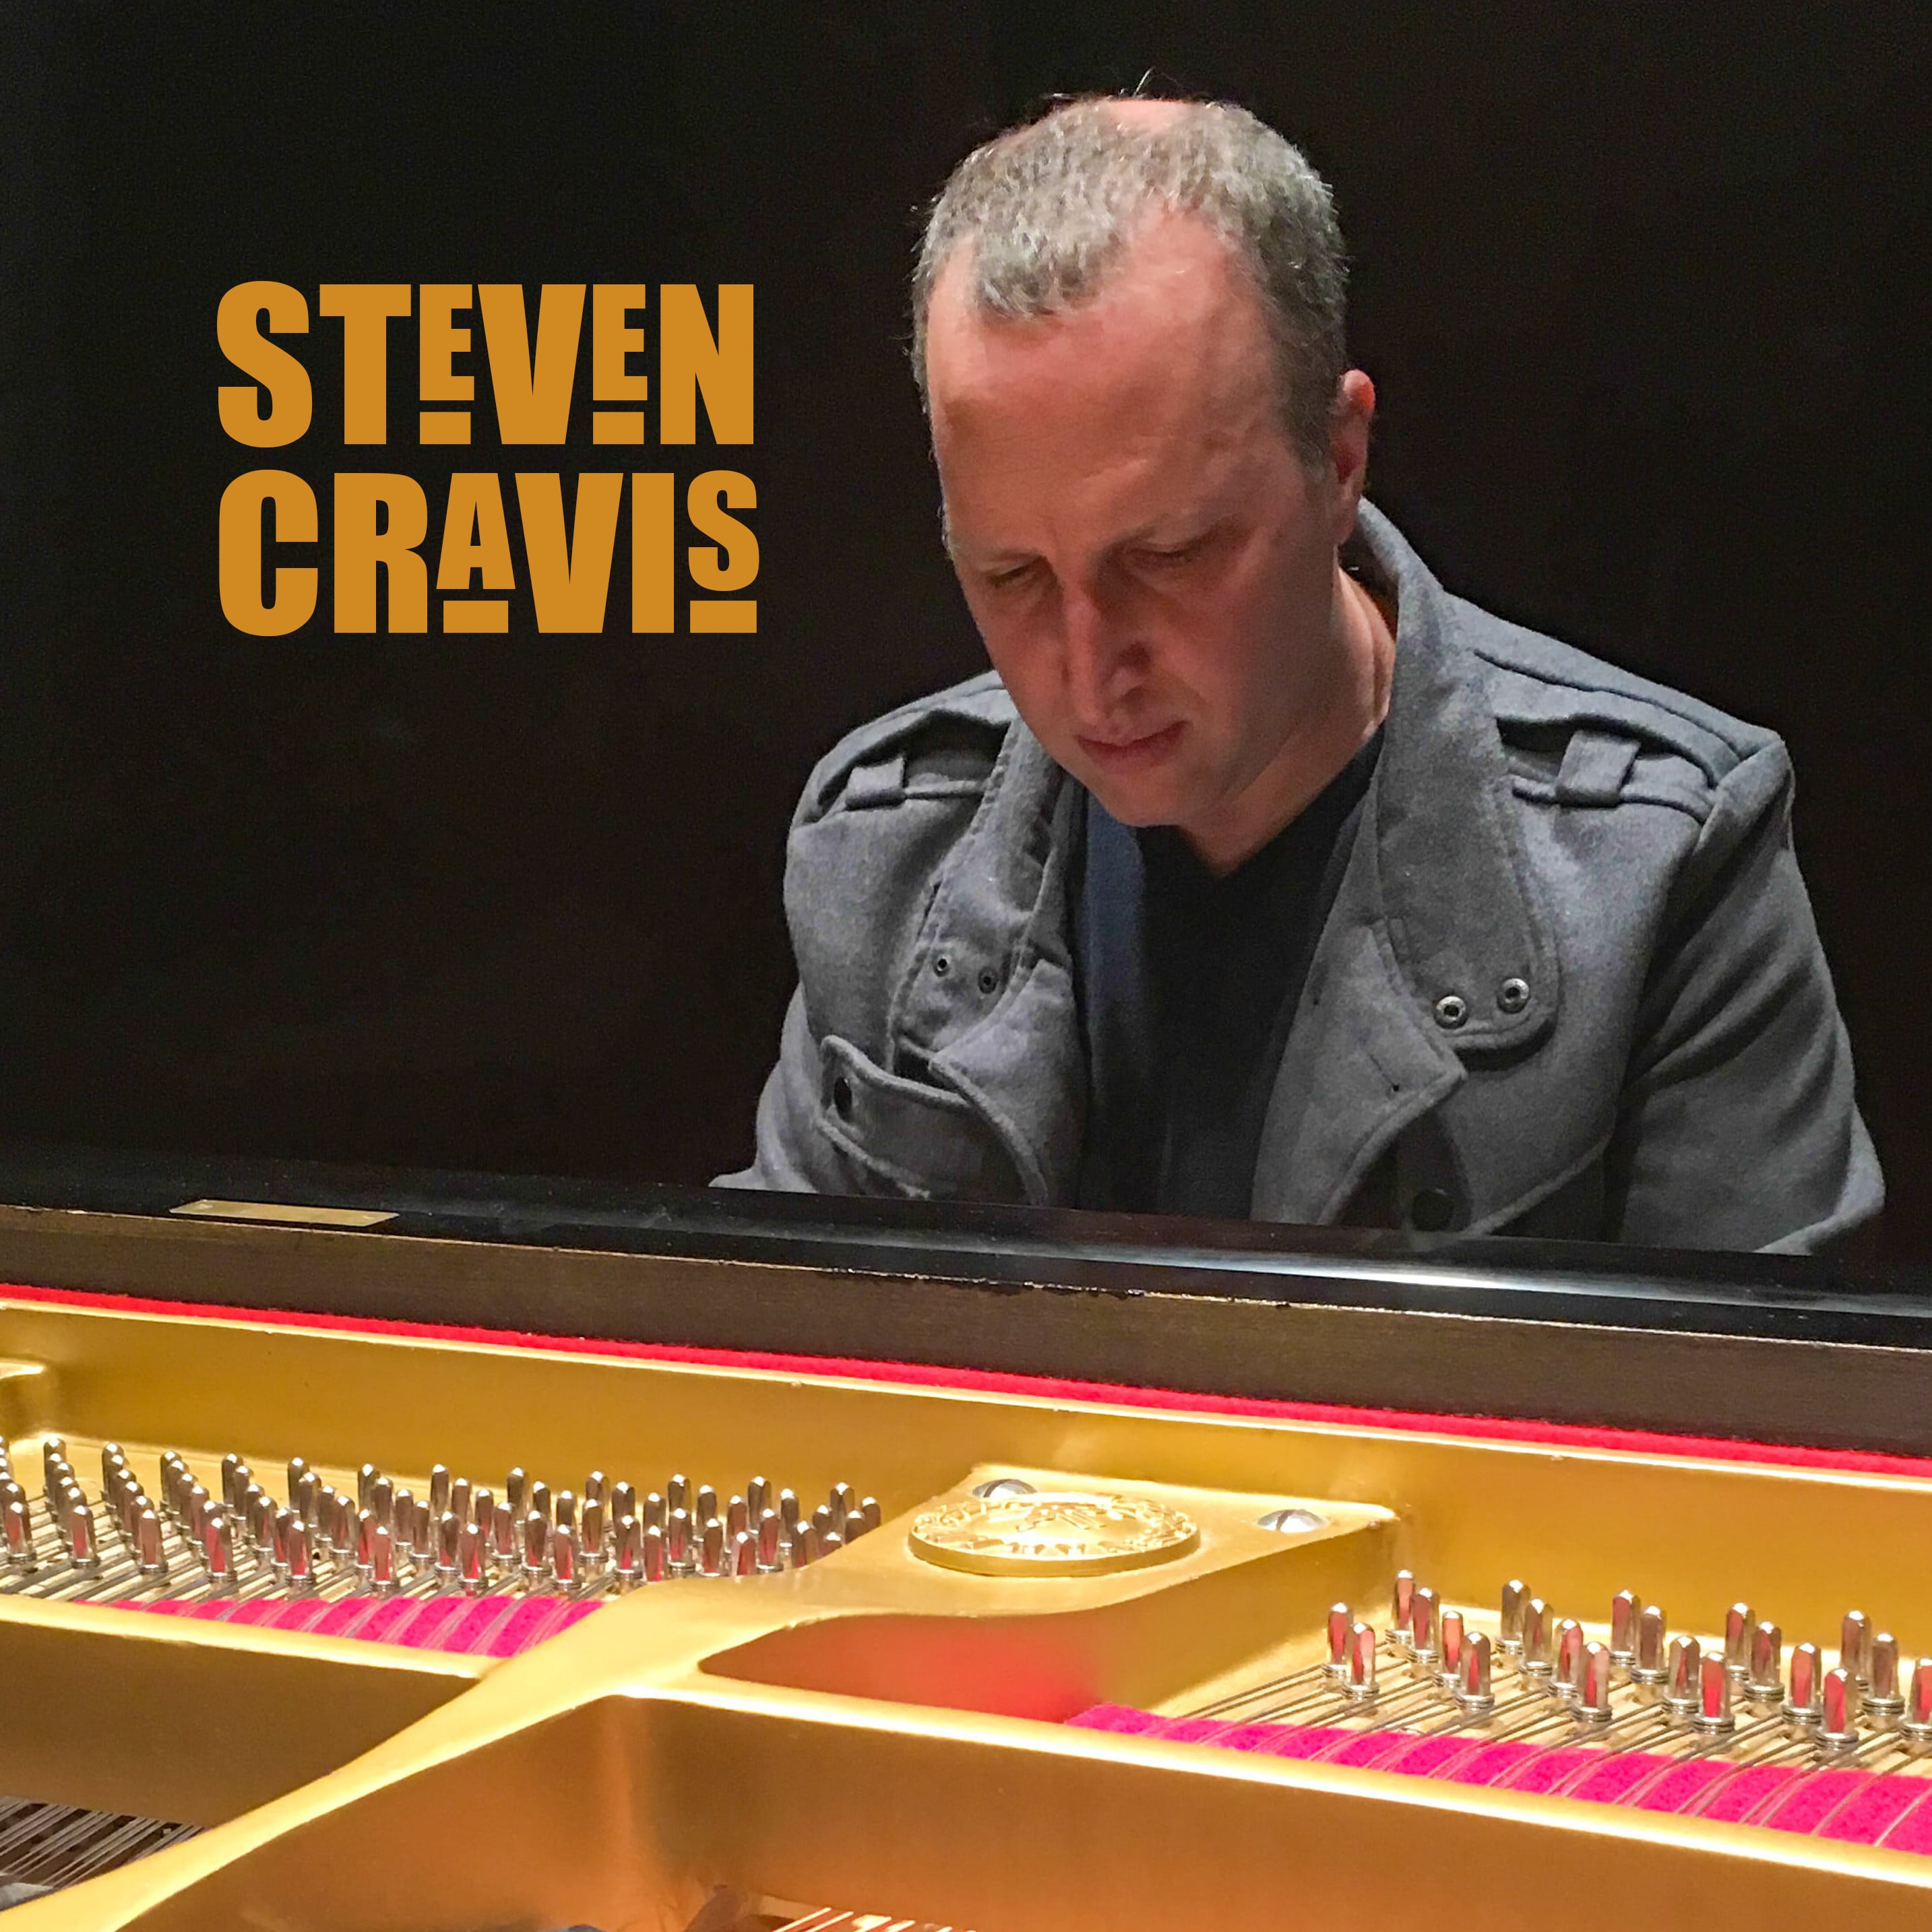 Steven Cravis